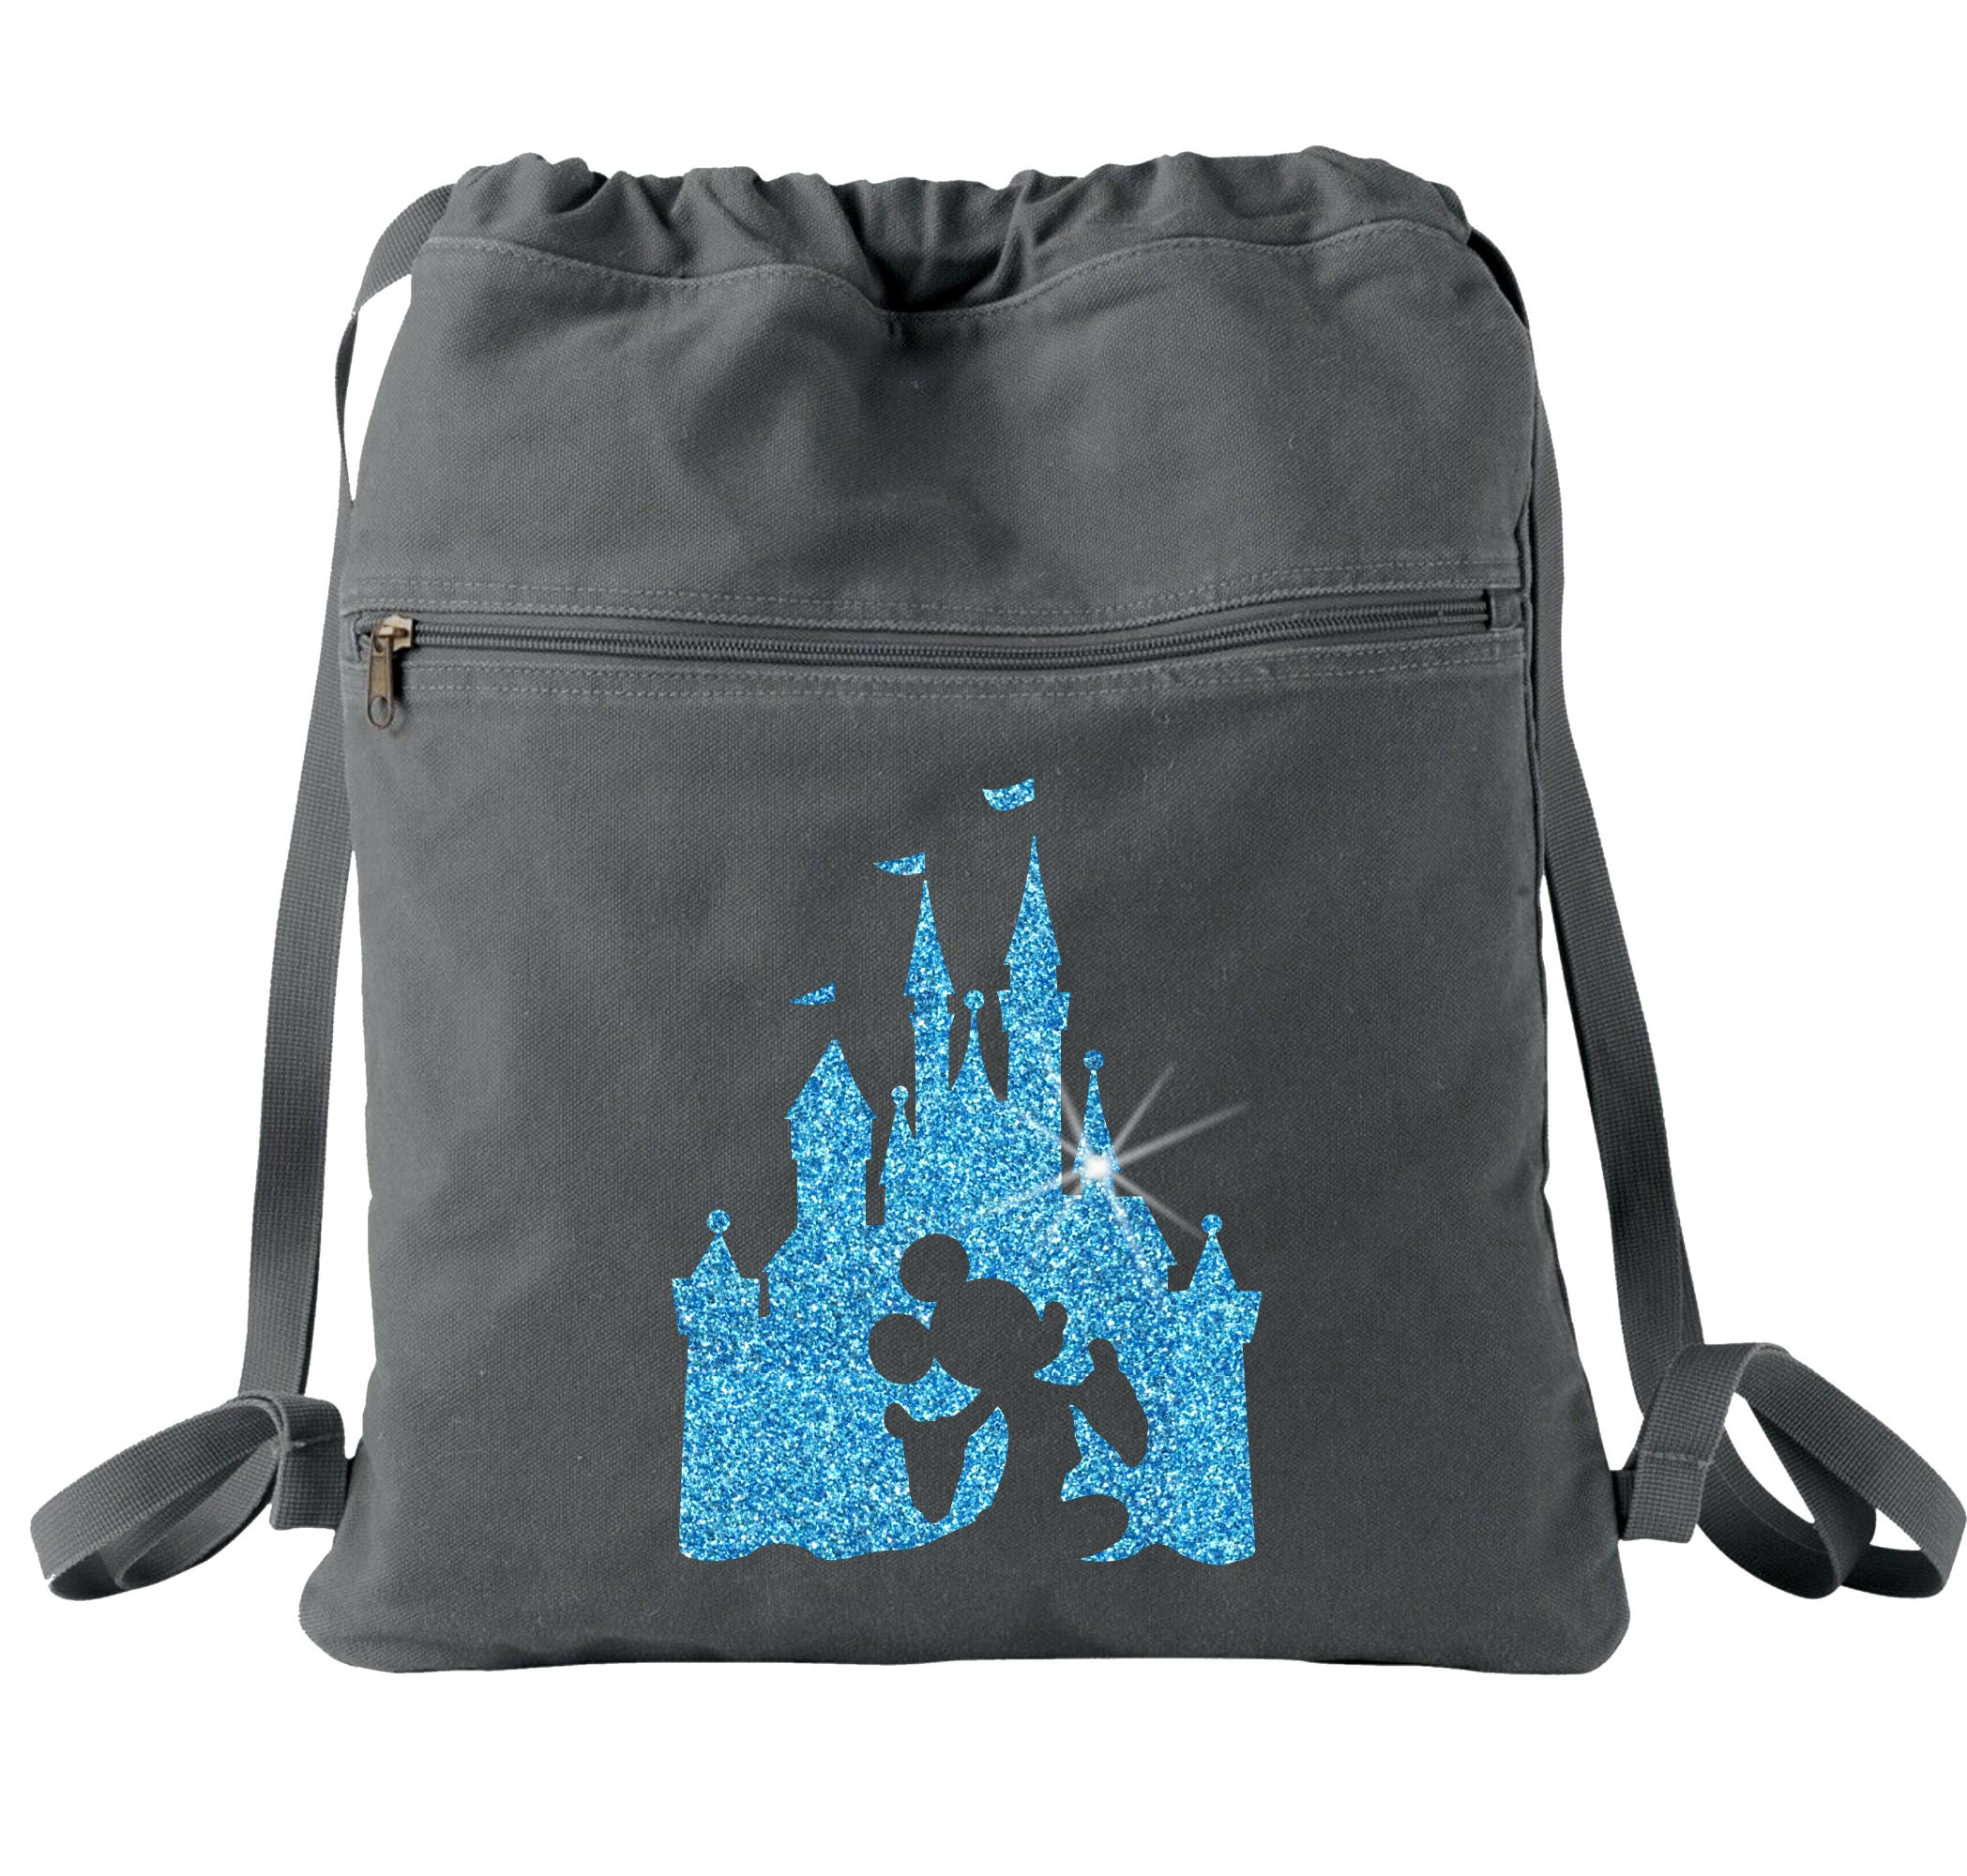 Aqua Small Sparkling Shoulder Bag - 100% Exclusive